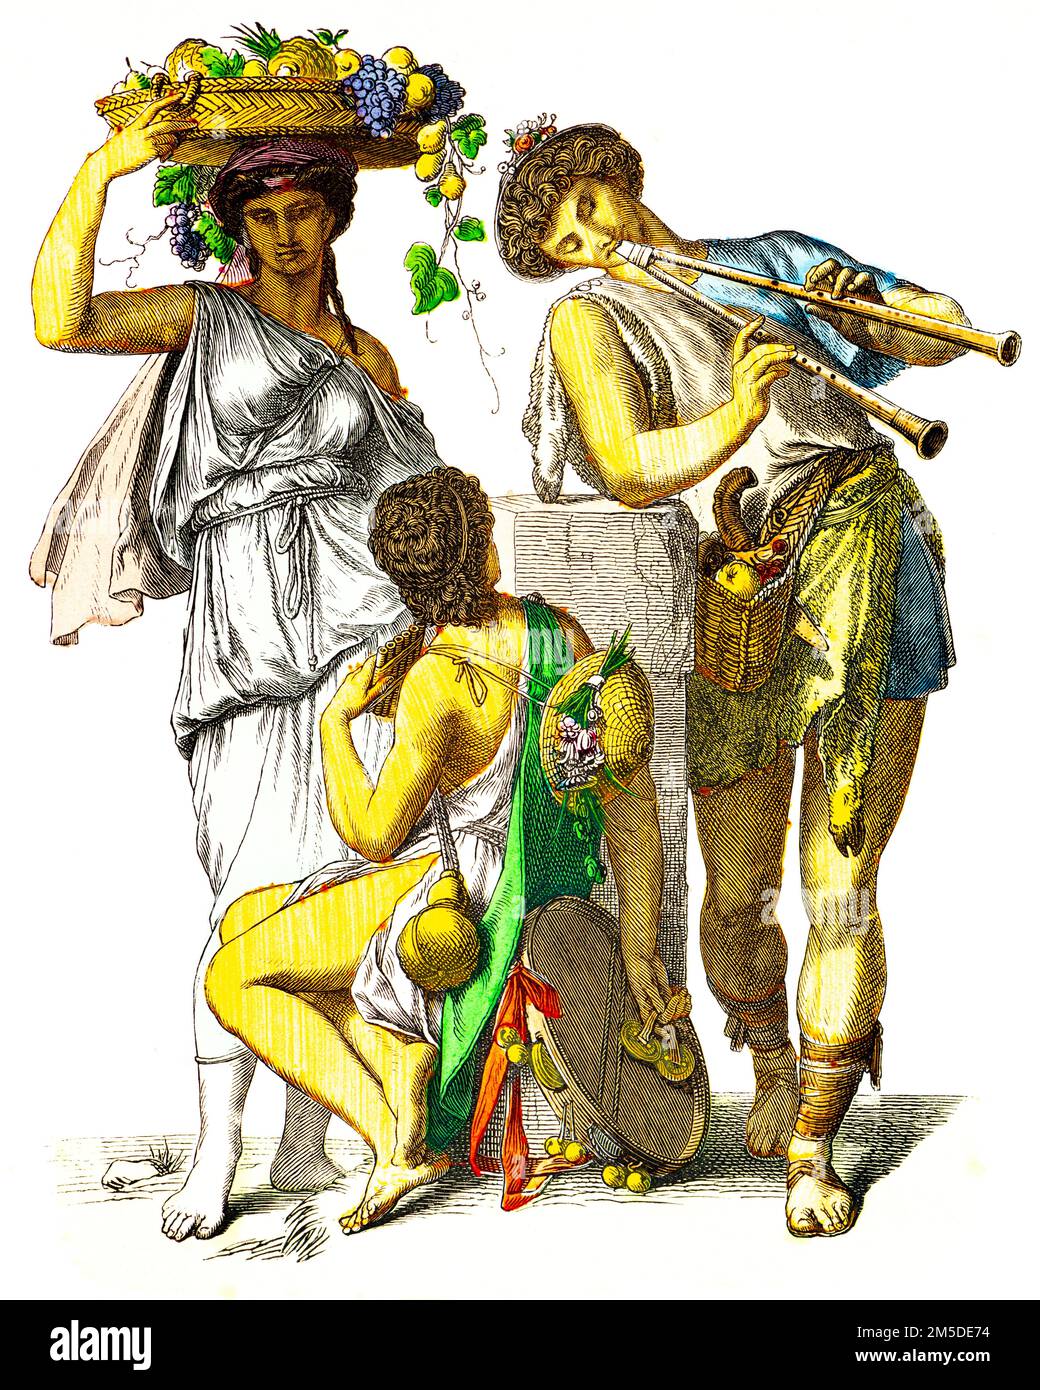 Costumi storici del greco di tempi antichi, illustrazione storica colorata, Münchener Bilderbogen, München 1890 Foto Stock